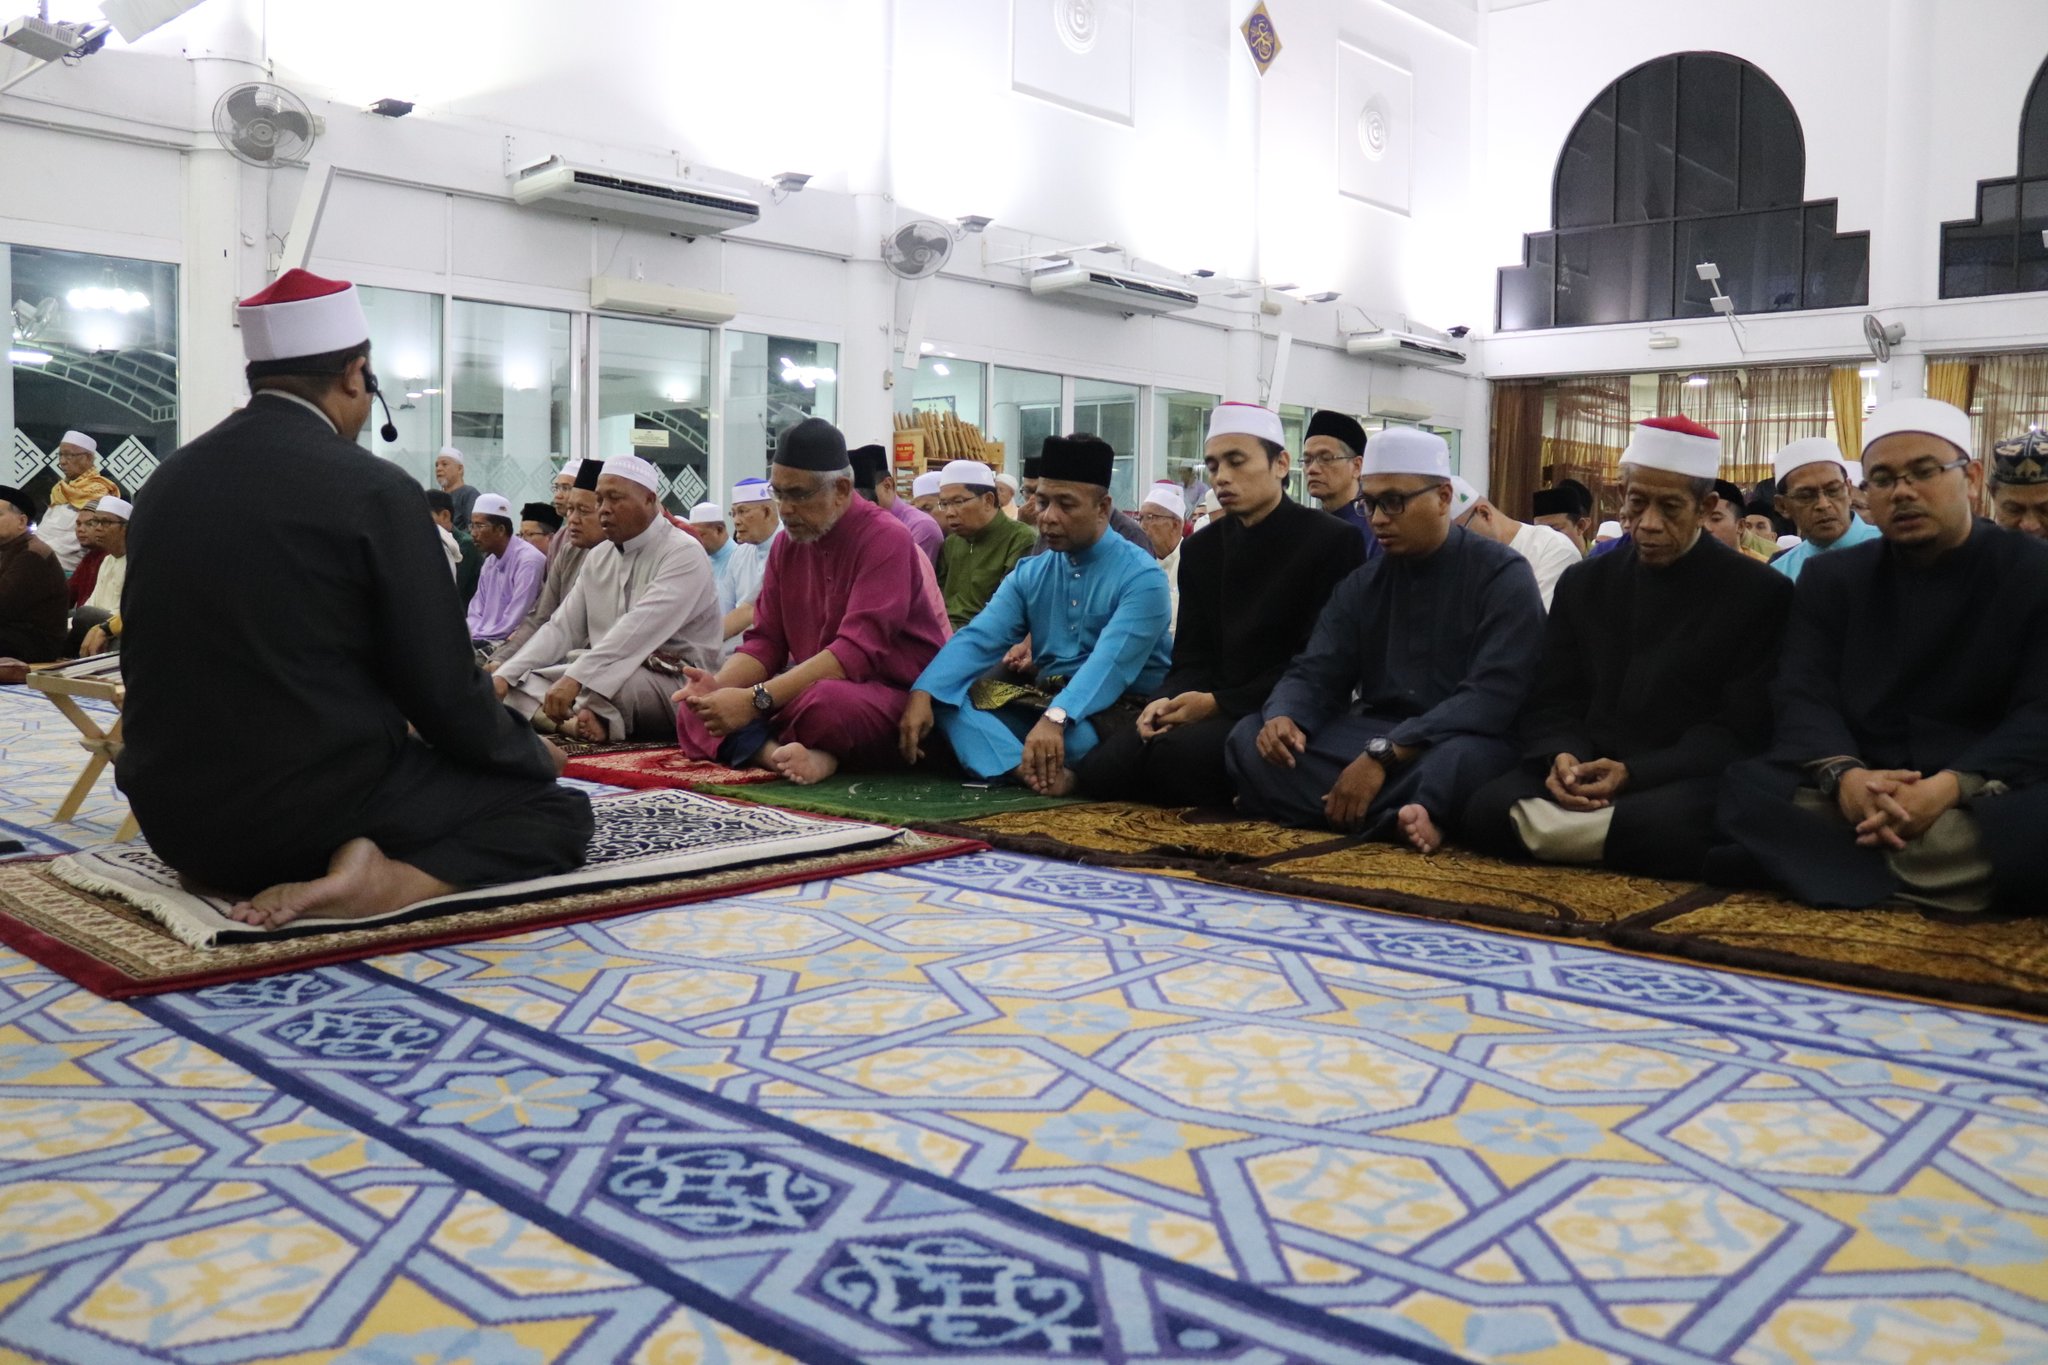 Masjid saidina hamzah batu muda